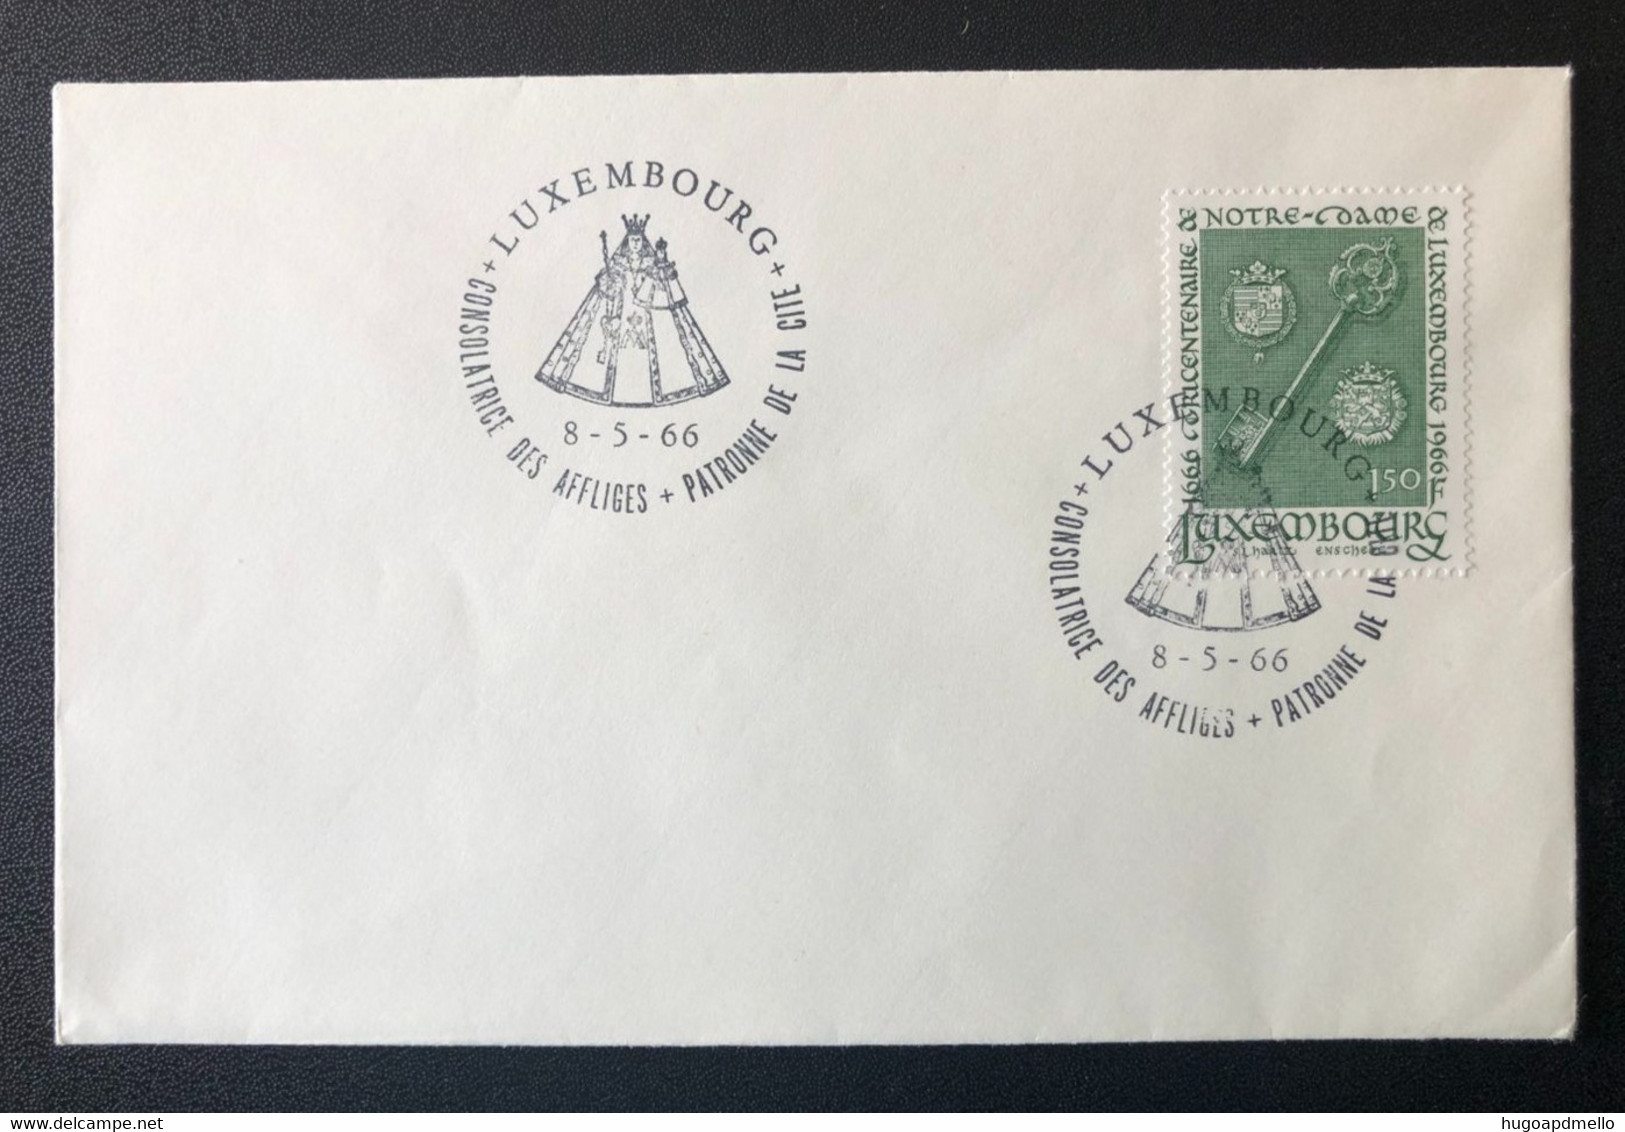 LUXEMBOURG, Uncirculated Cover, « Consolatrice Des Affligés Patronne De La Cité », « Commemorative Postmark », 1966 - Storia Postale